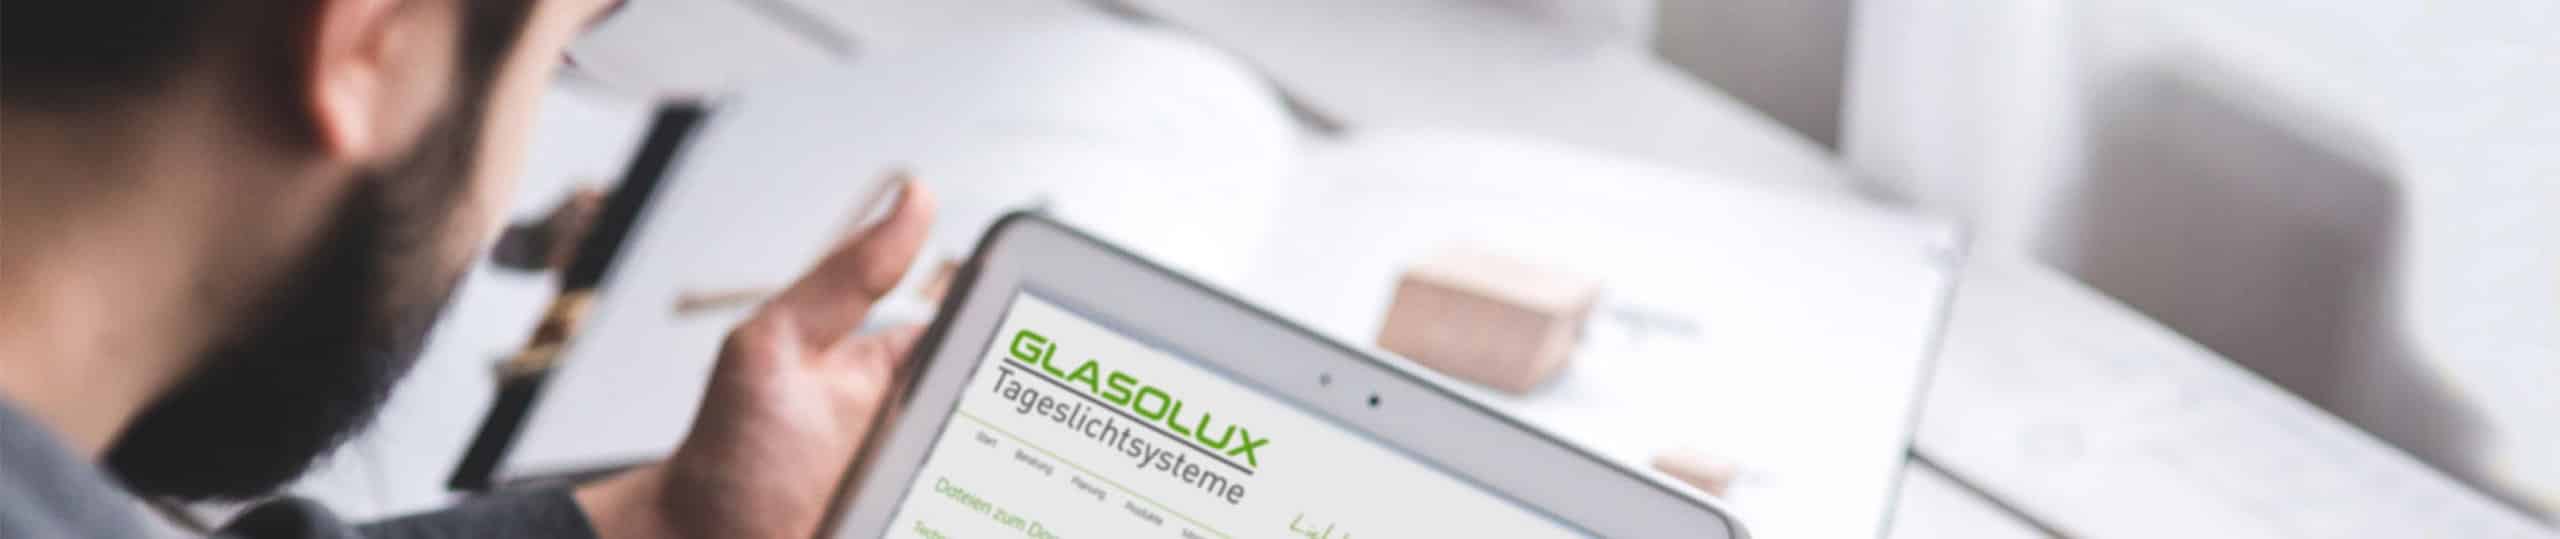 GLASOLUX Dateien zum herunterladen – GLASOUX download files